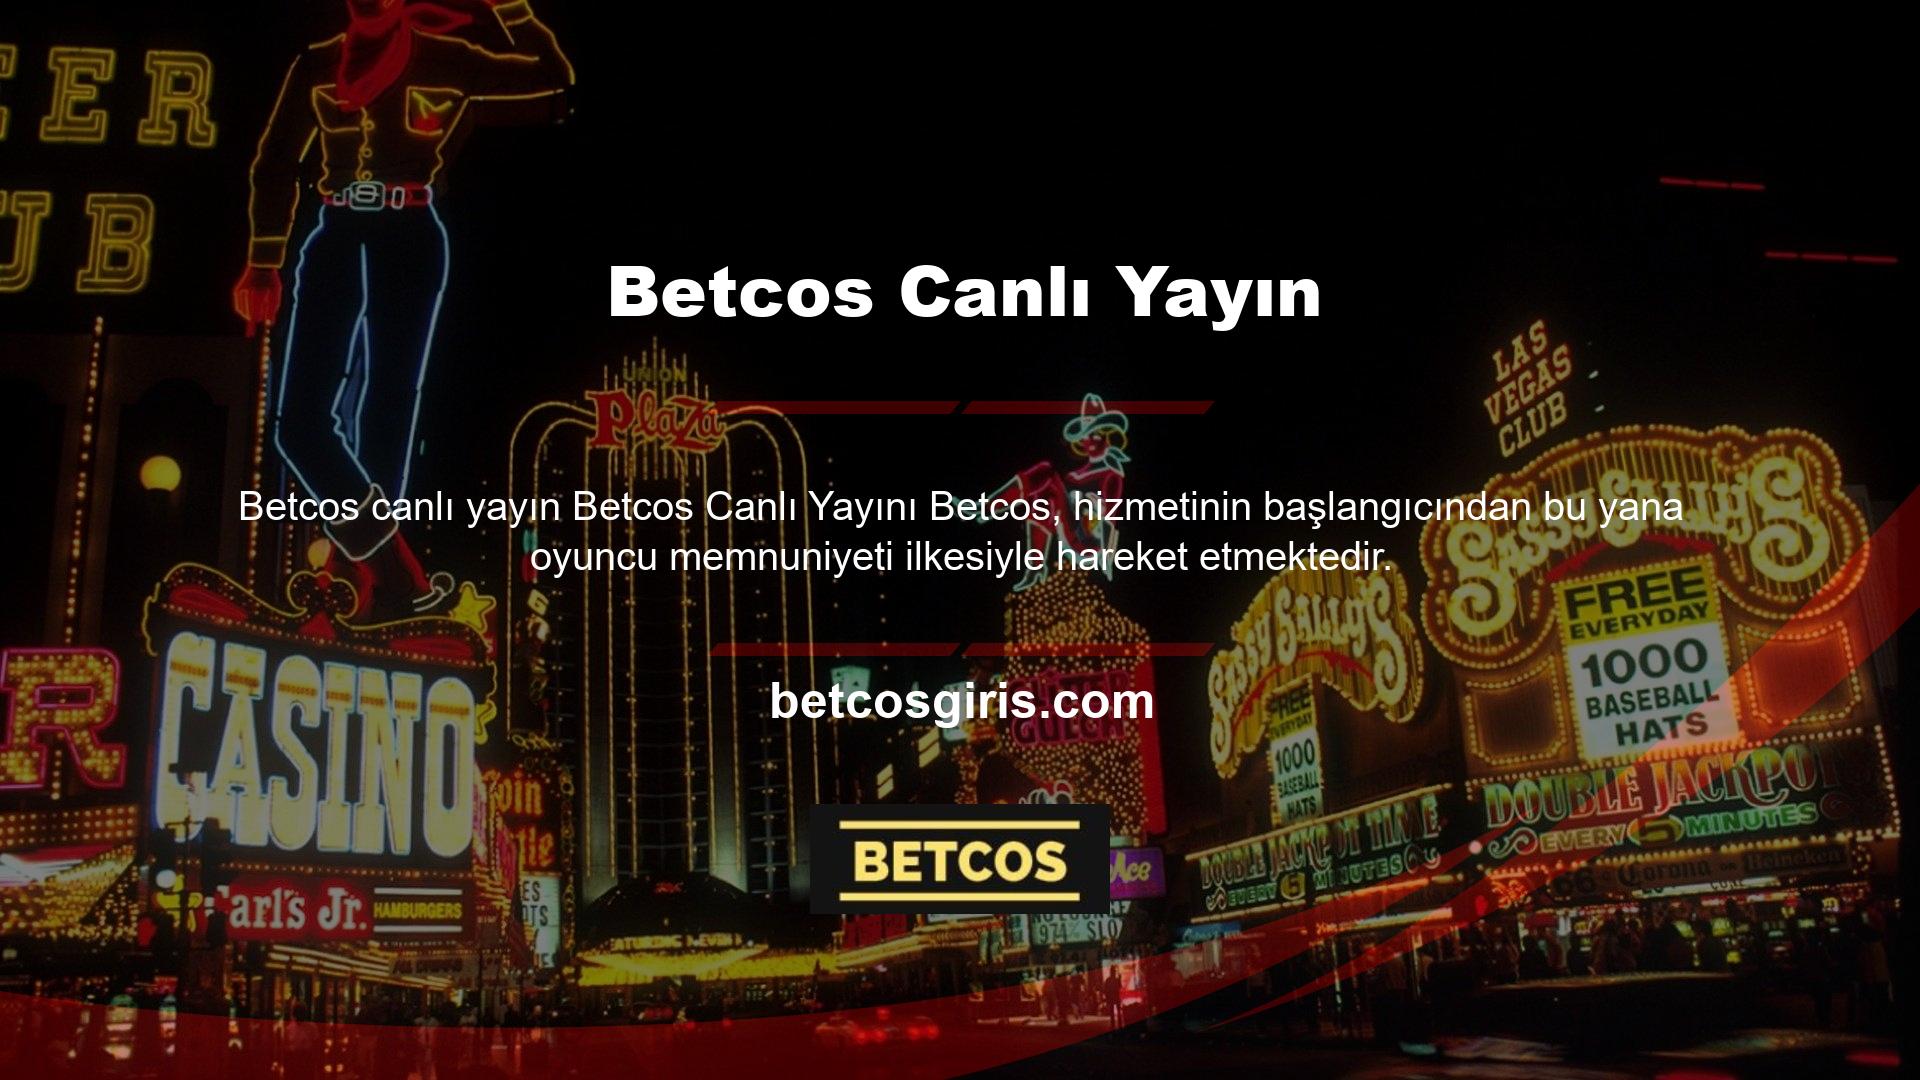 Bunun sonucunda Betcos en popüler casino sitelerinden biri haline geldi